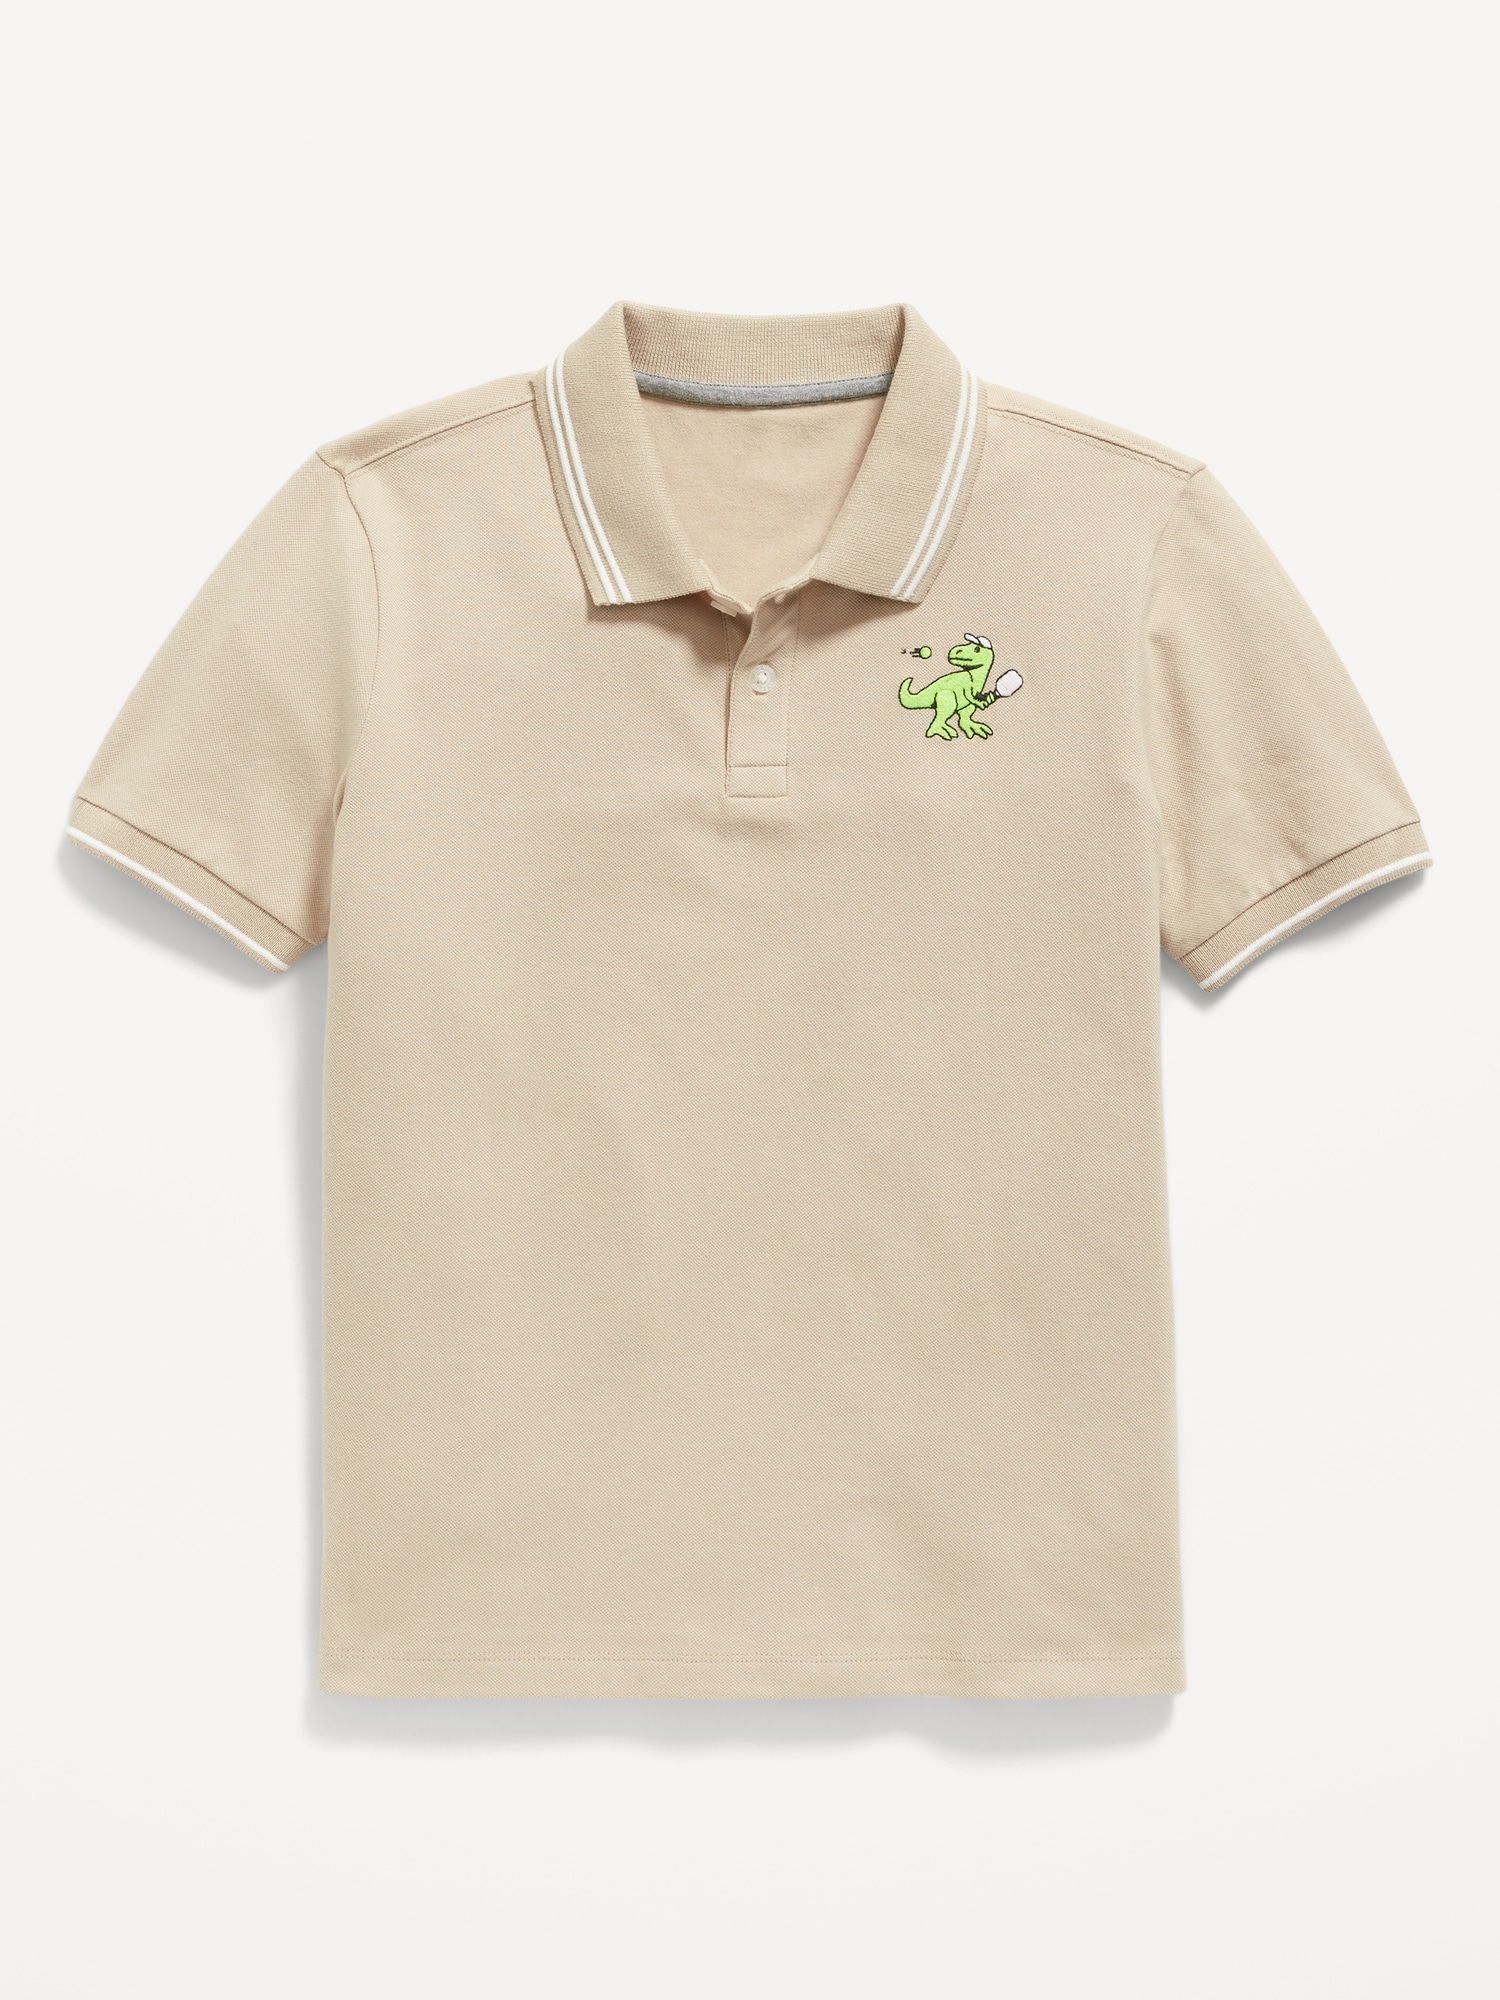 Short-Sleeve Pique Polo Shirt for Boys